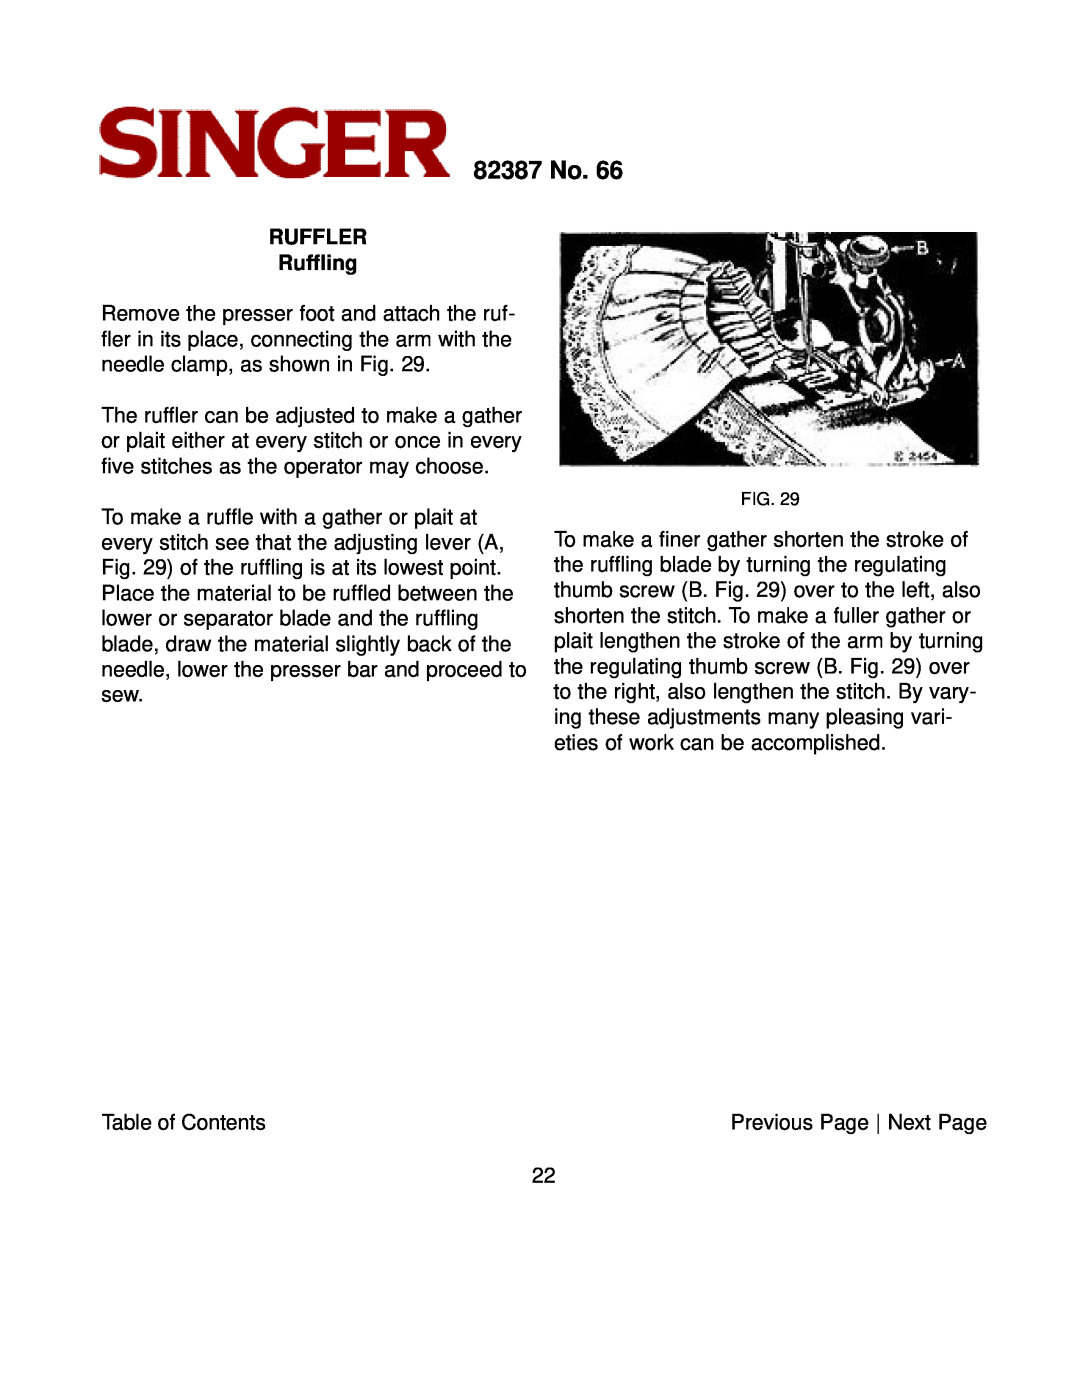 Singer instruction manual RUFFLER Ruffling, 82387 No 